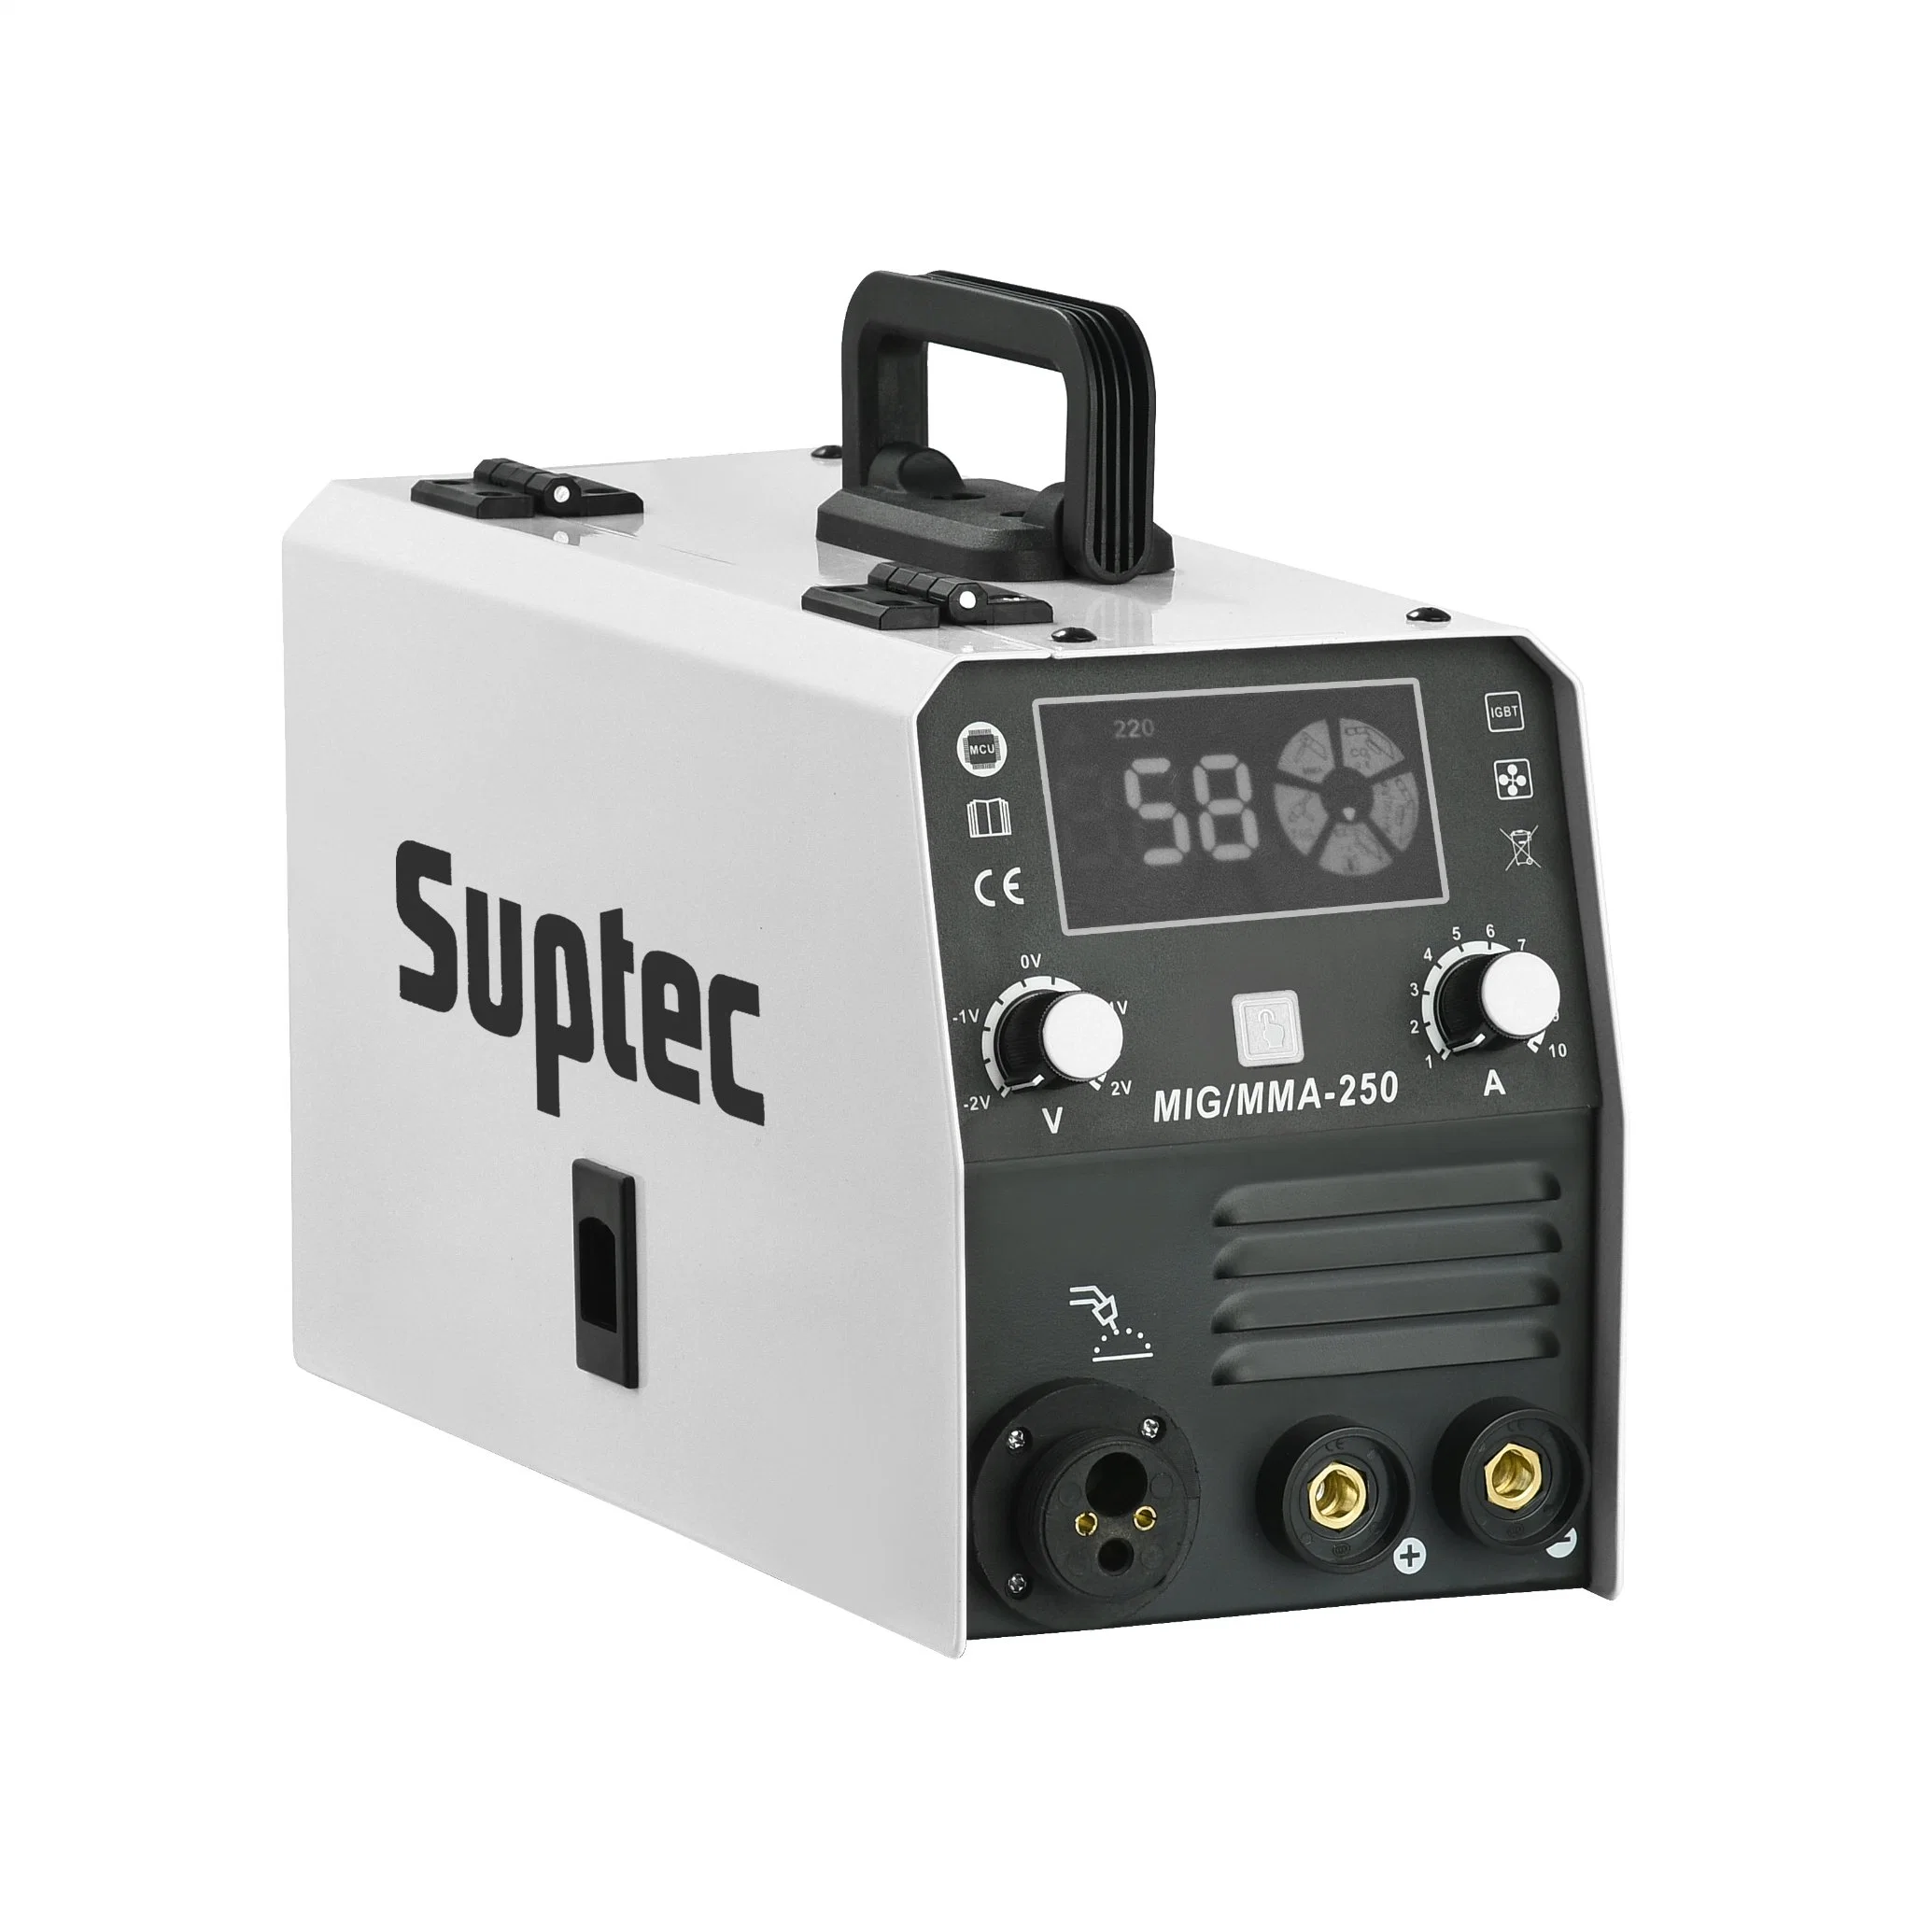 Suptec миг-251 большой ЖК-дисплей цифровой поток Gasless нет газа/ провод сварке плавящимися машины для использования в домашних условиях легко управлять 120A сварочный аппарат